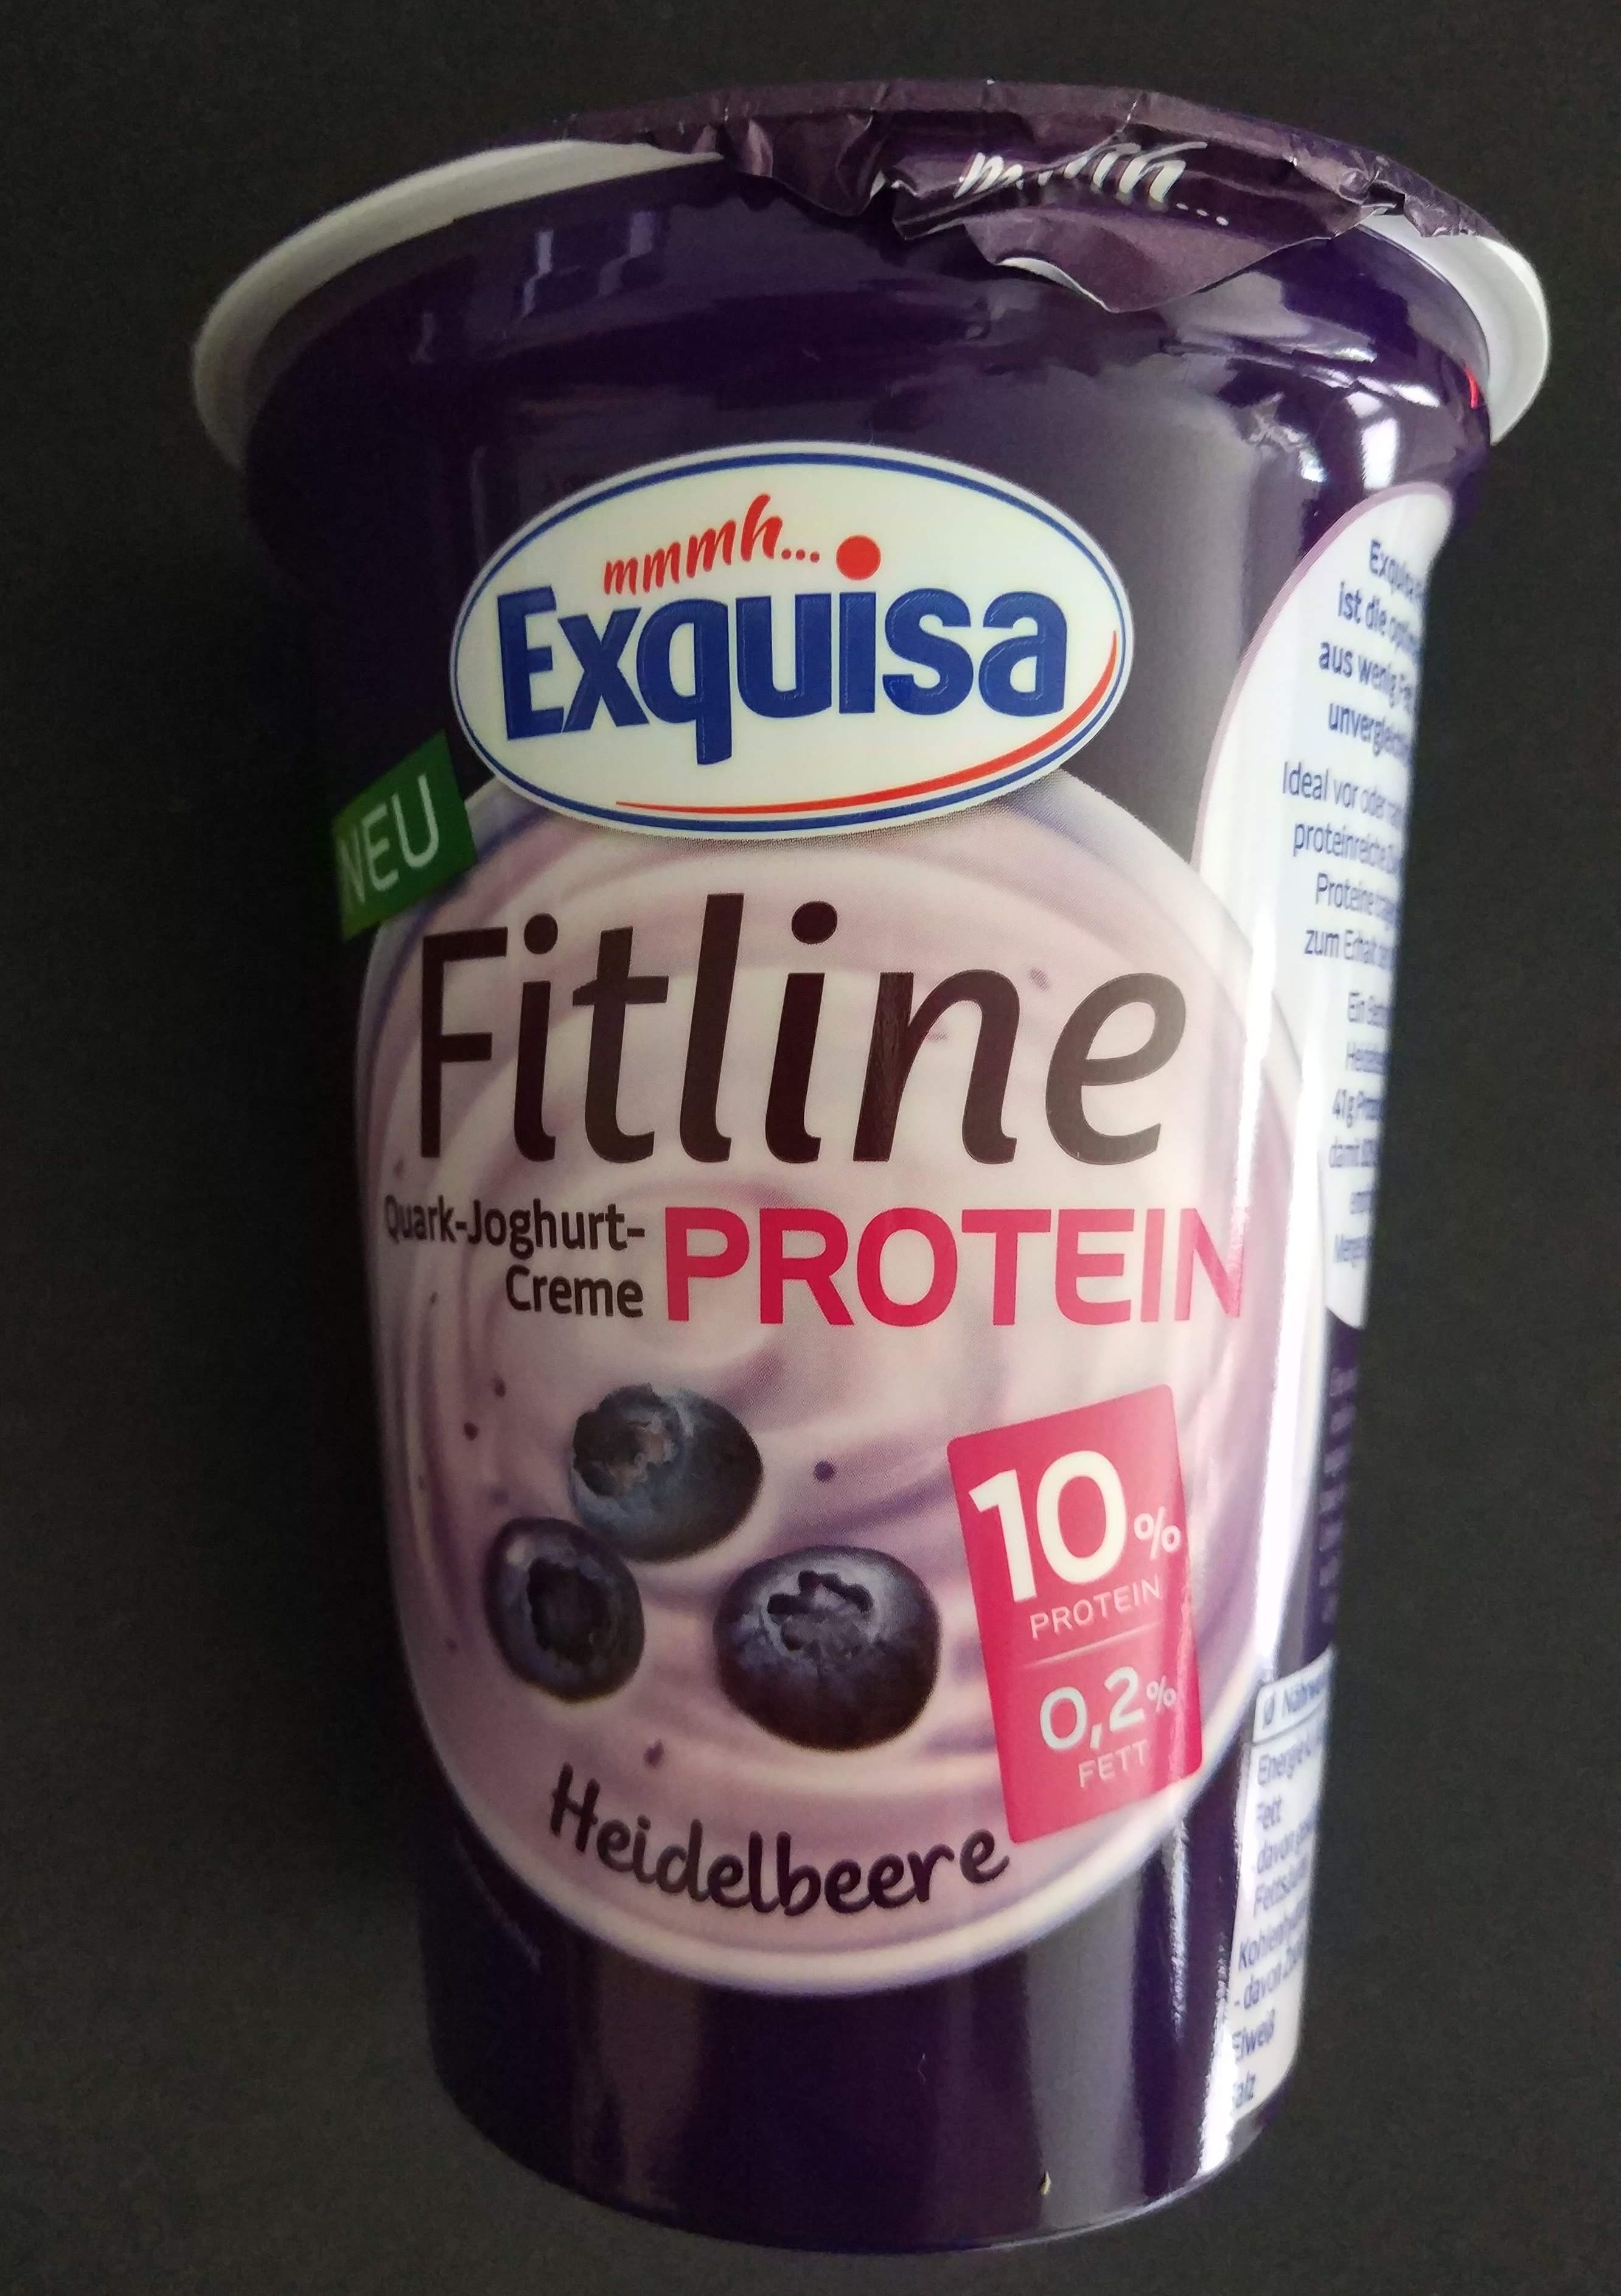 Fitline Quark-Joghurt Protein Creme - Produkt - bg